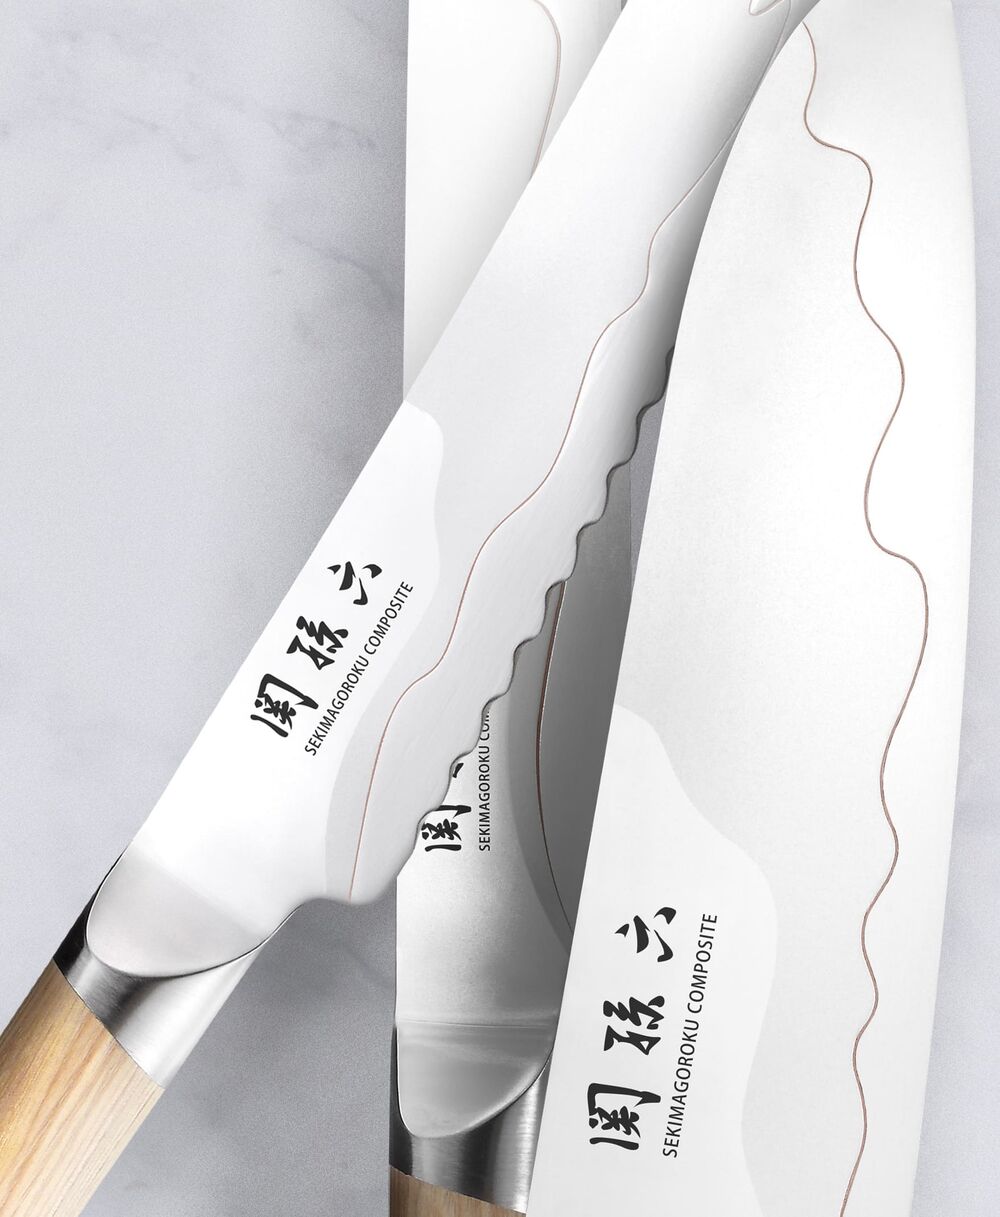 Нож поварской Сантоку KAI Магороку Композит 16,5 см, два сорта стали, ручка светлое дерево - фото 2